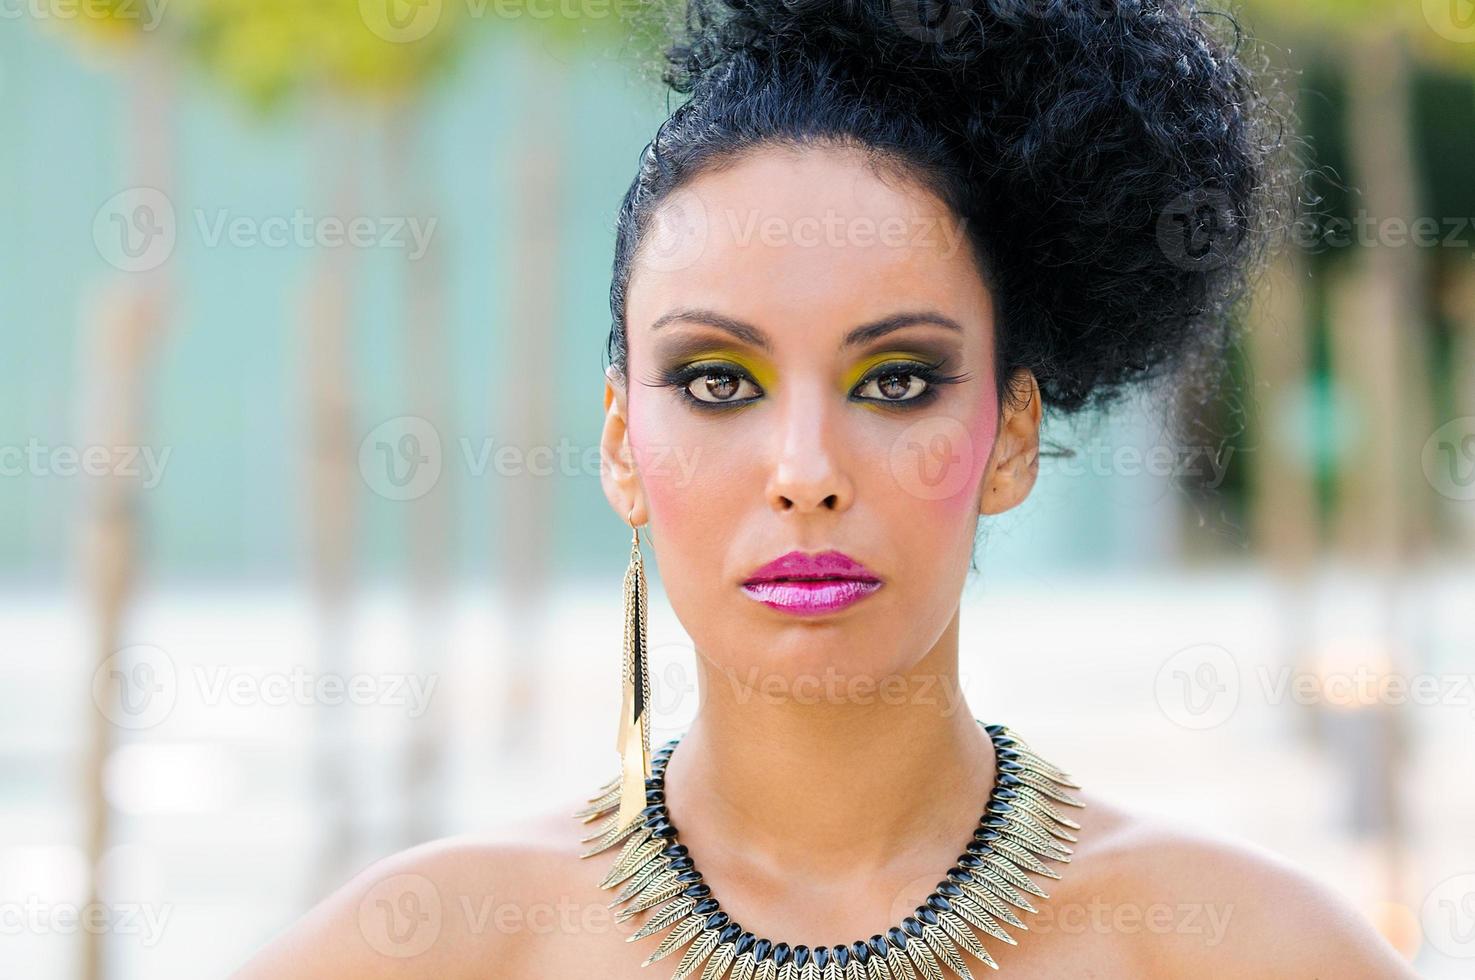 jovem negra, modelo de moda com maquiagem de fantasia foto